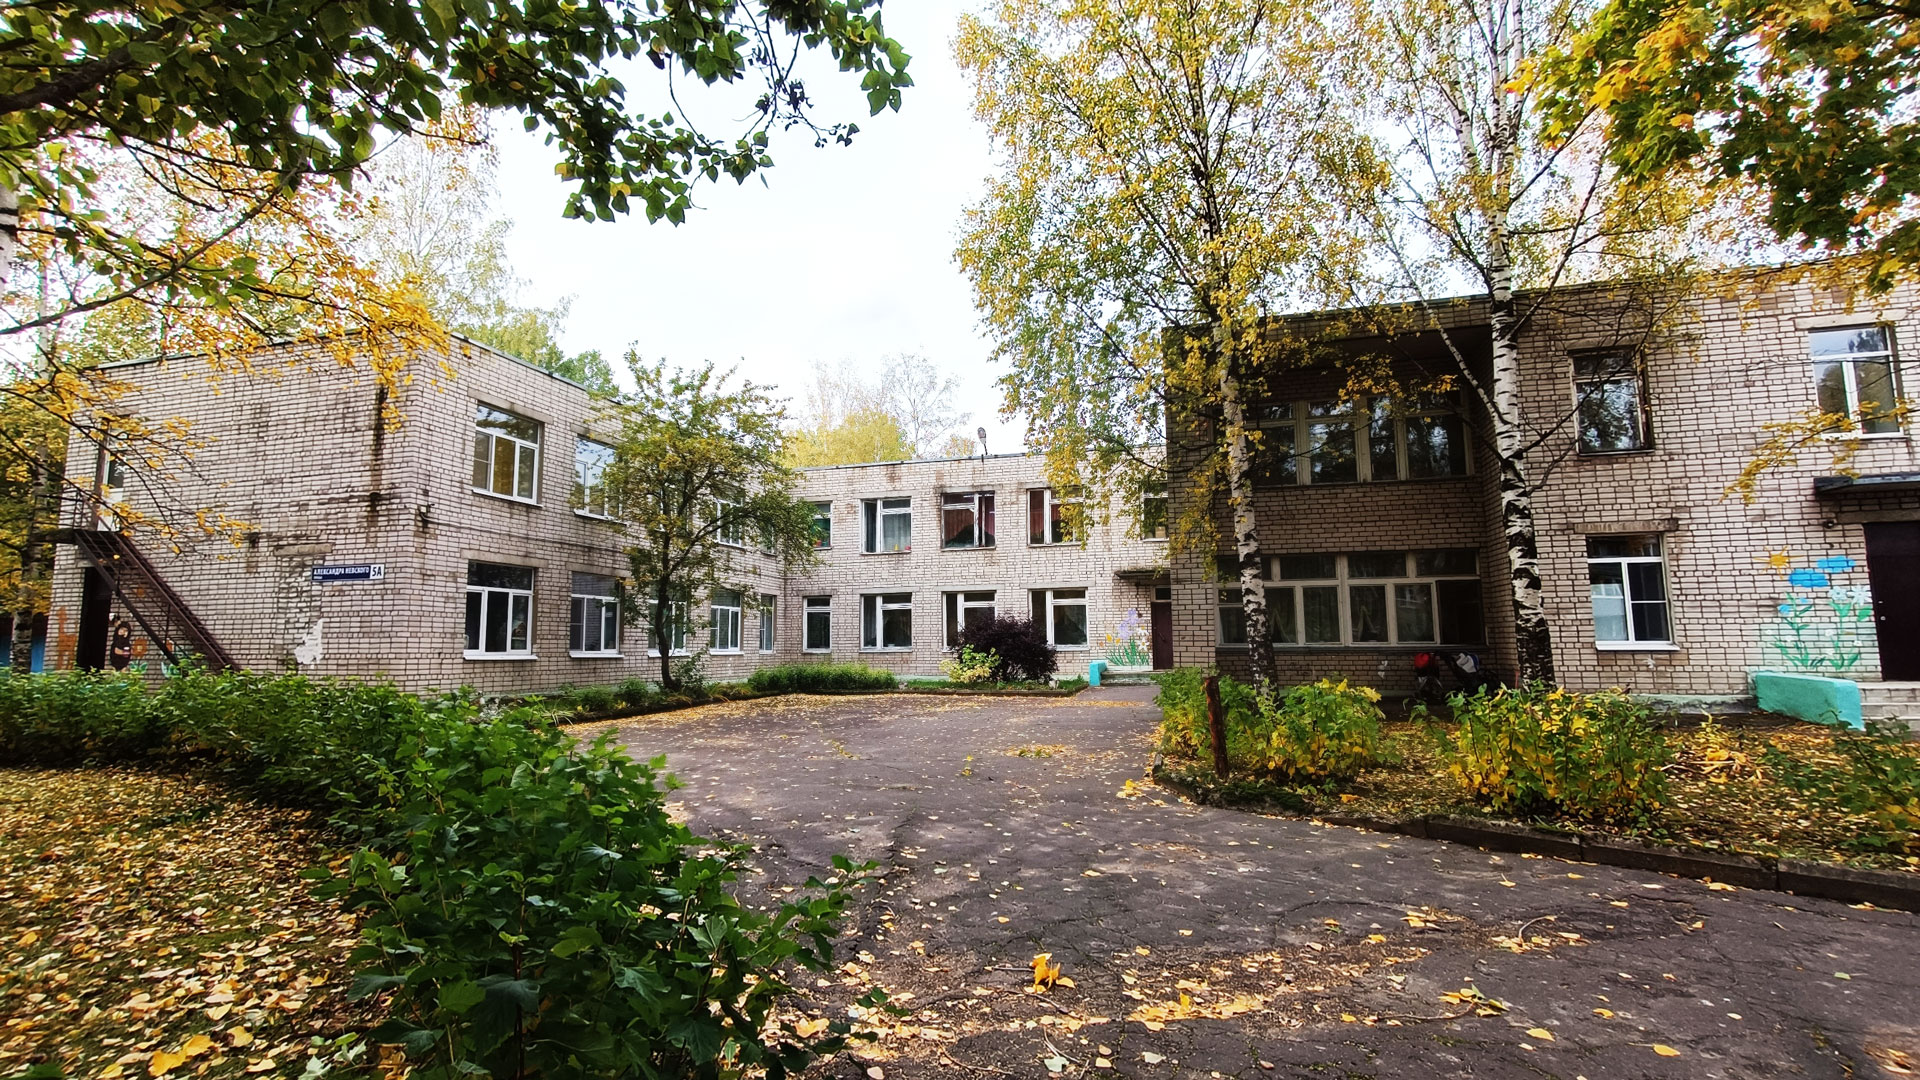 Детский сад 91 Ярославль: общий вид здания д/с.